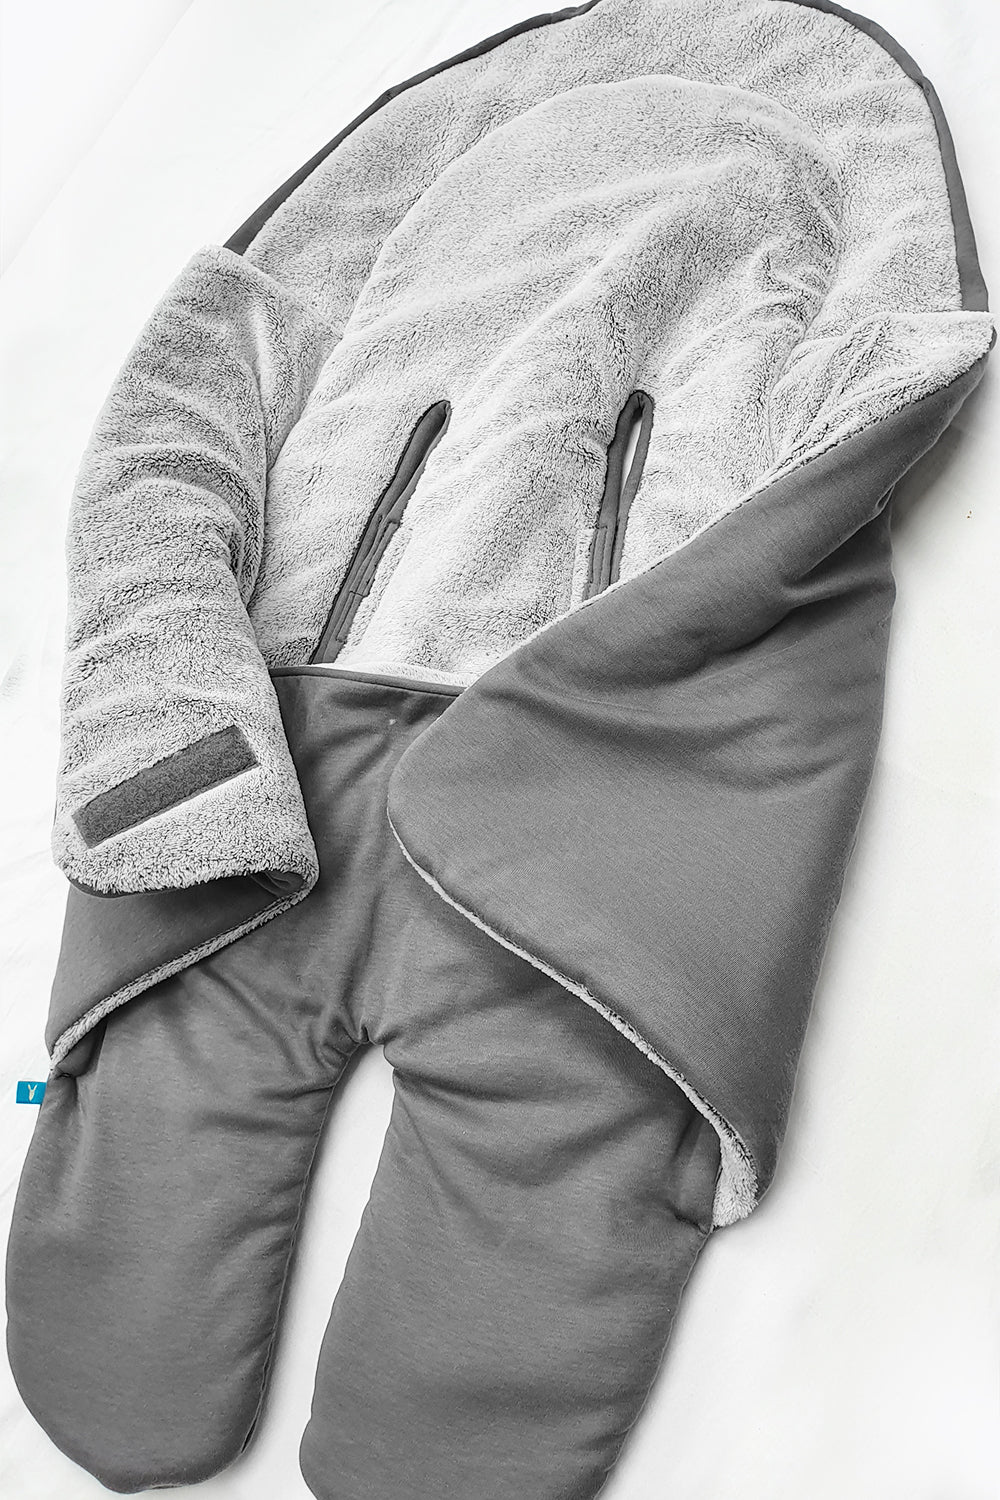 Couverture bébé grande taille pour siège auto et poussette en coton - gris  et gris claire – Wallaboo